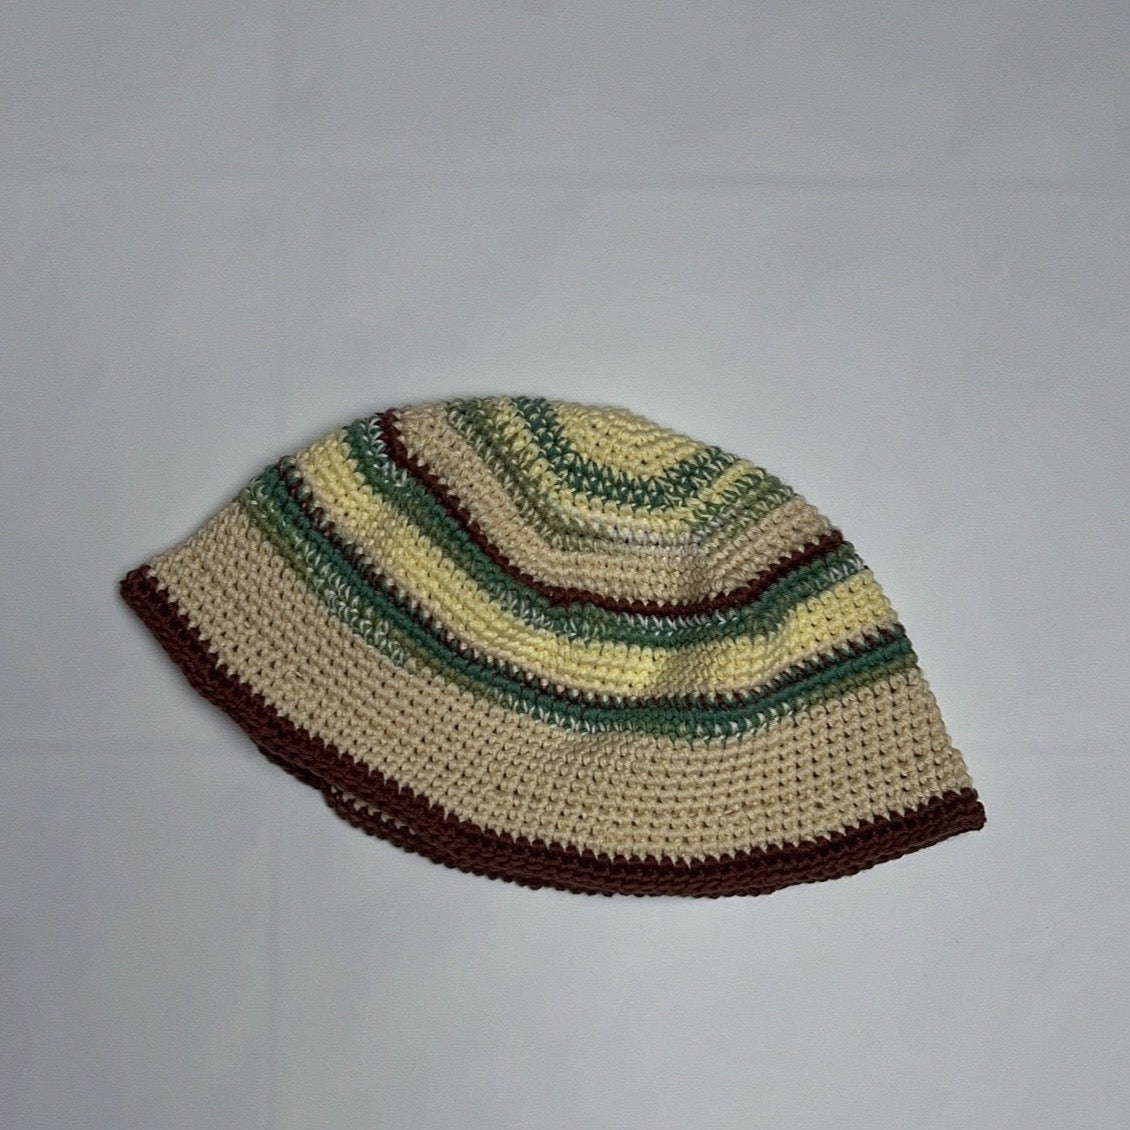 handmade crochet bucket hat "forest dusk"